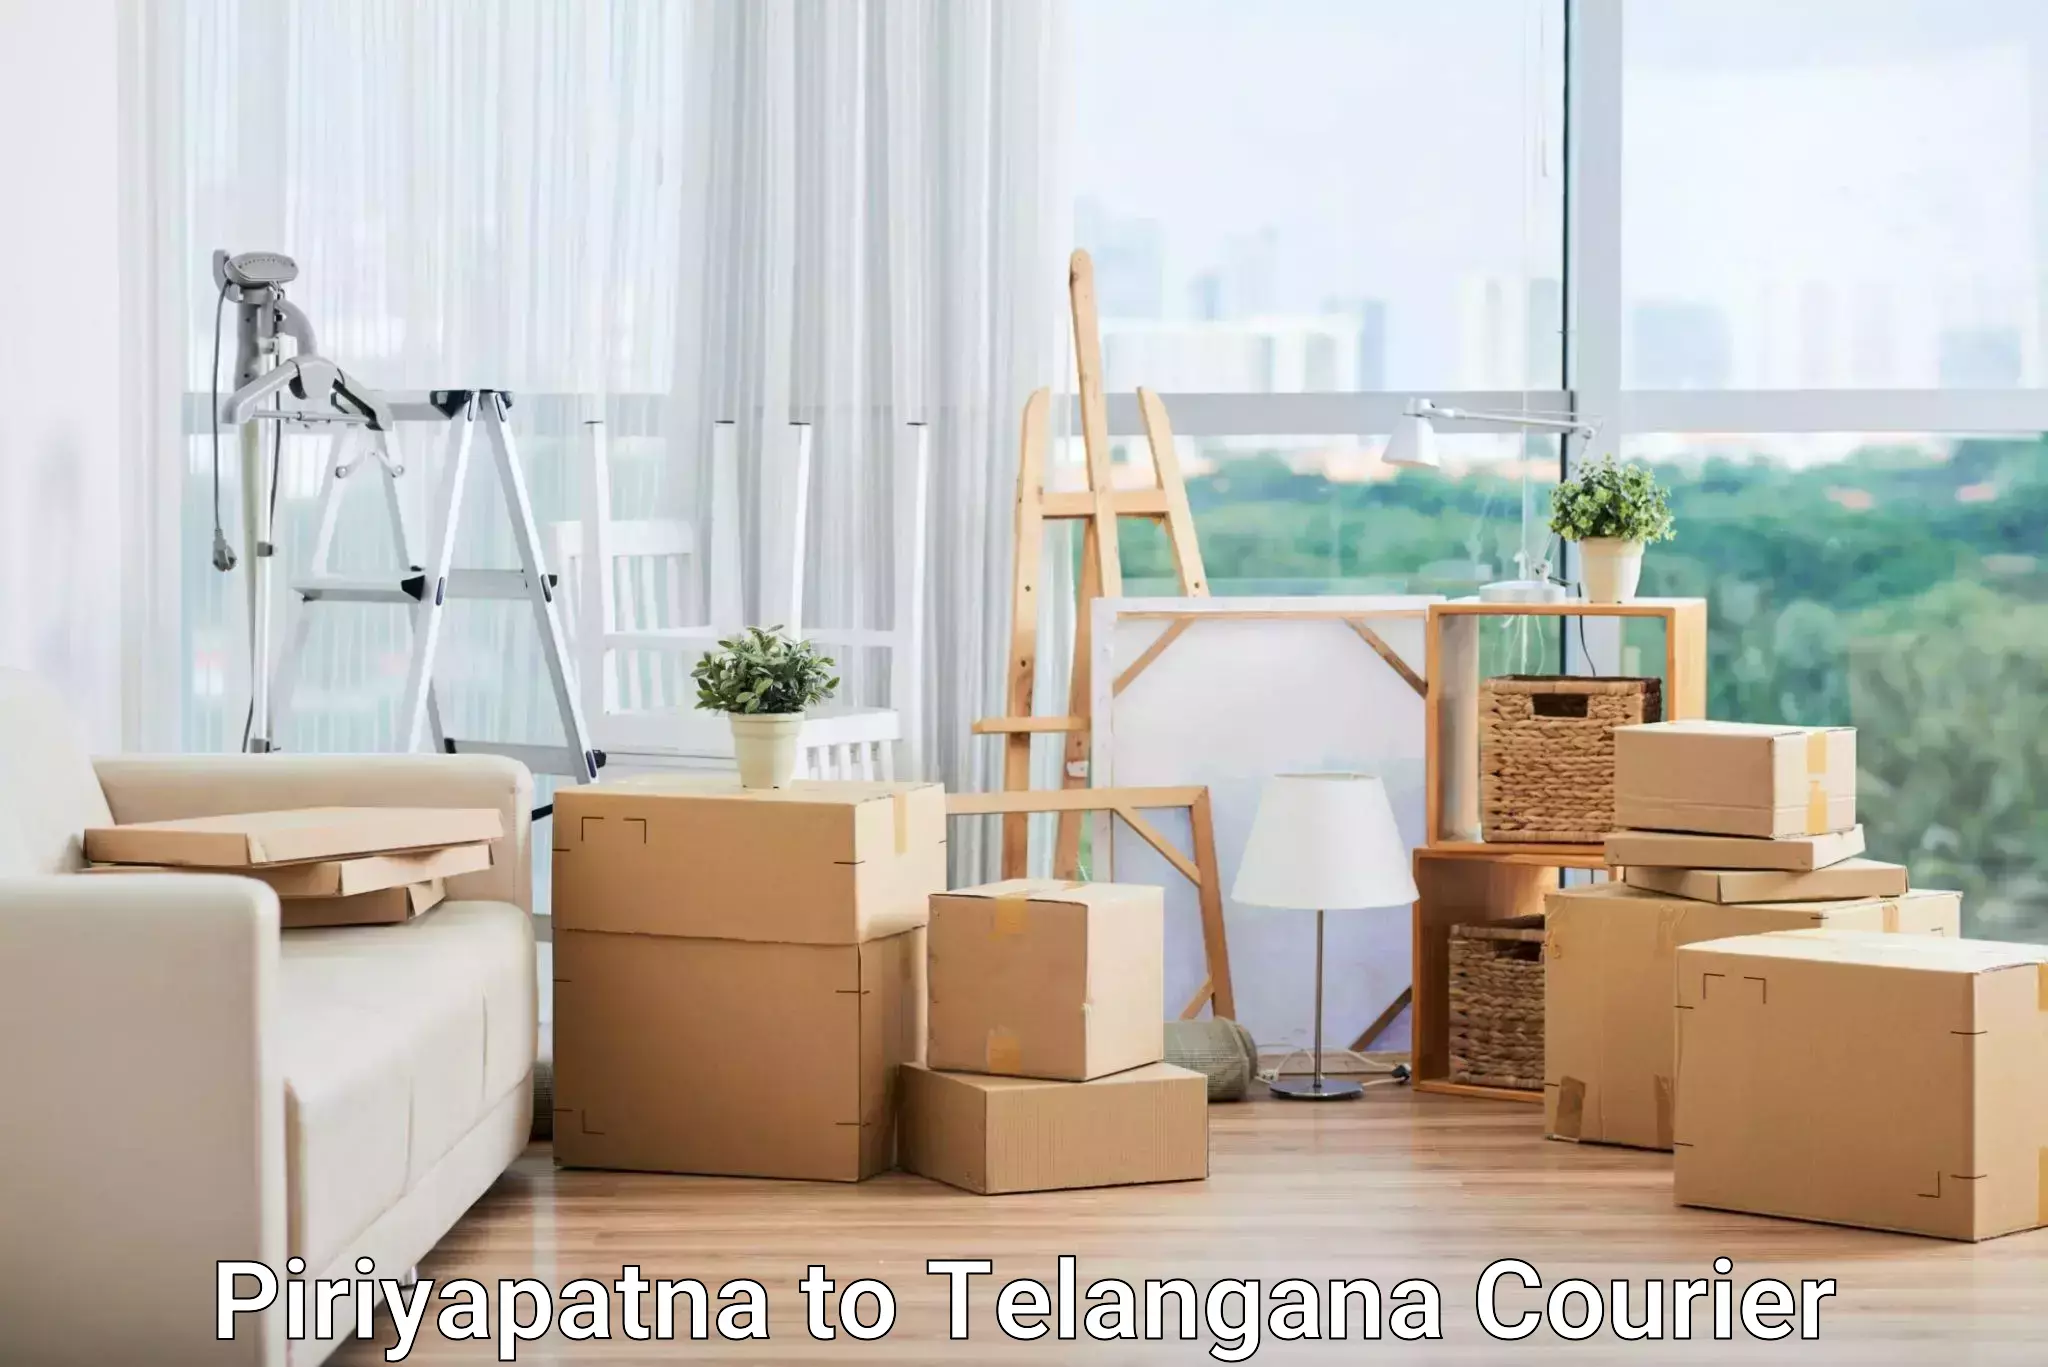 Courier insurance Piriyapatna to Haliya